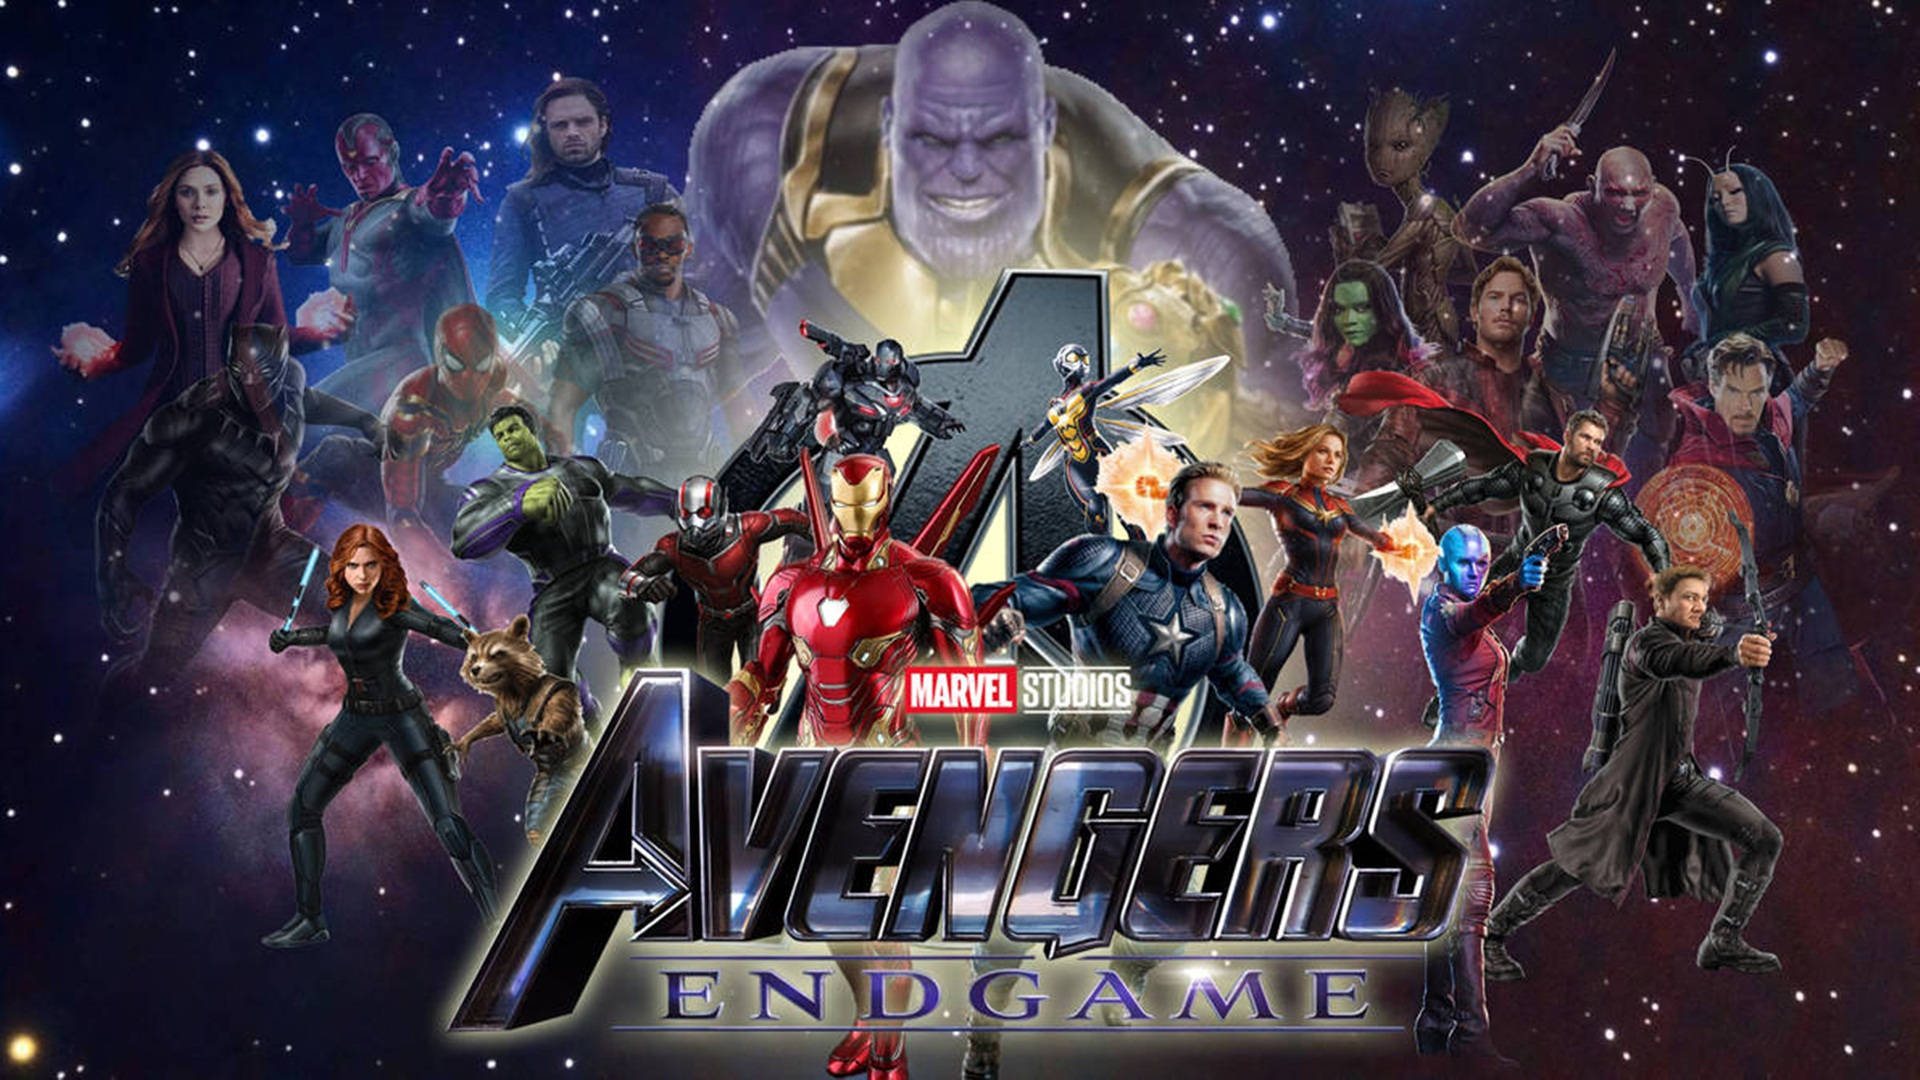 Download Avengers Endgame Wallpaper